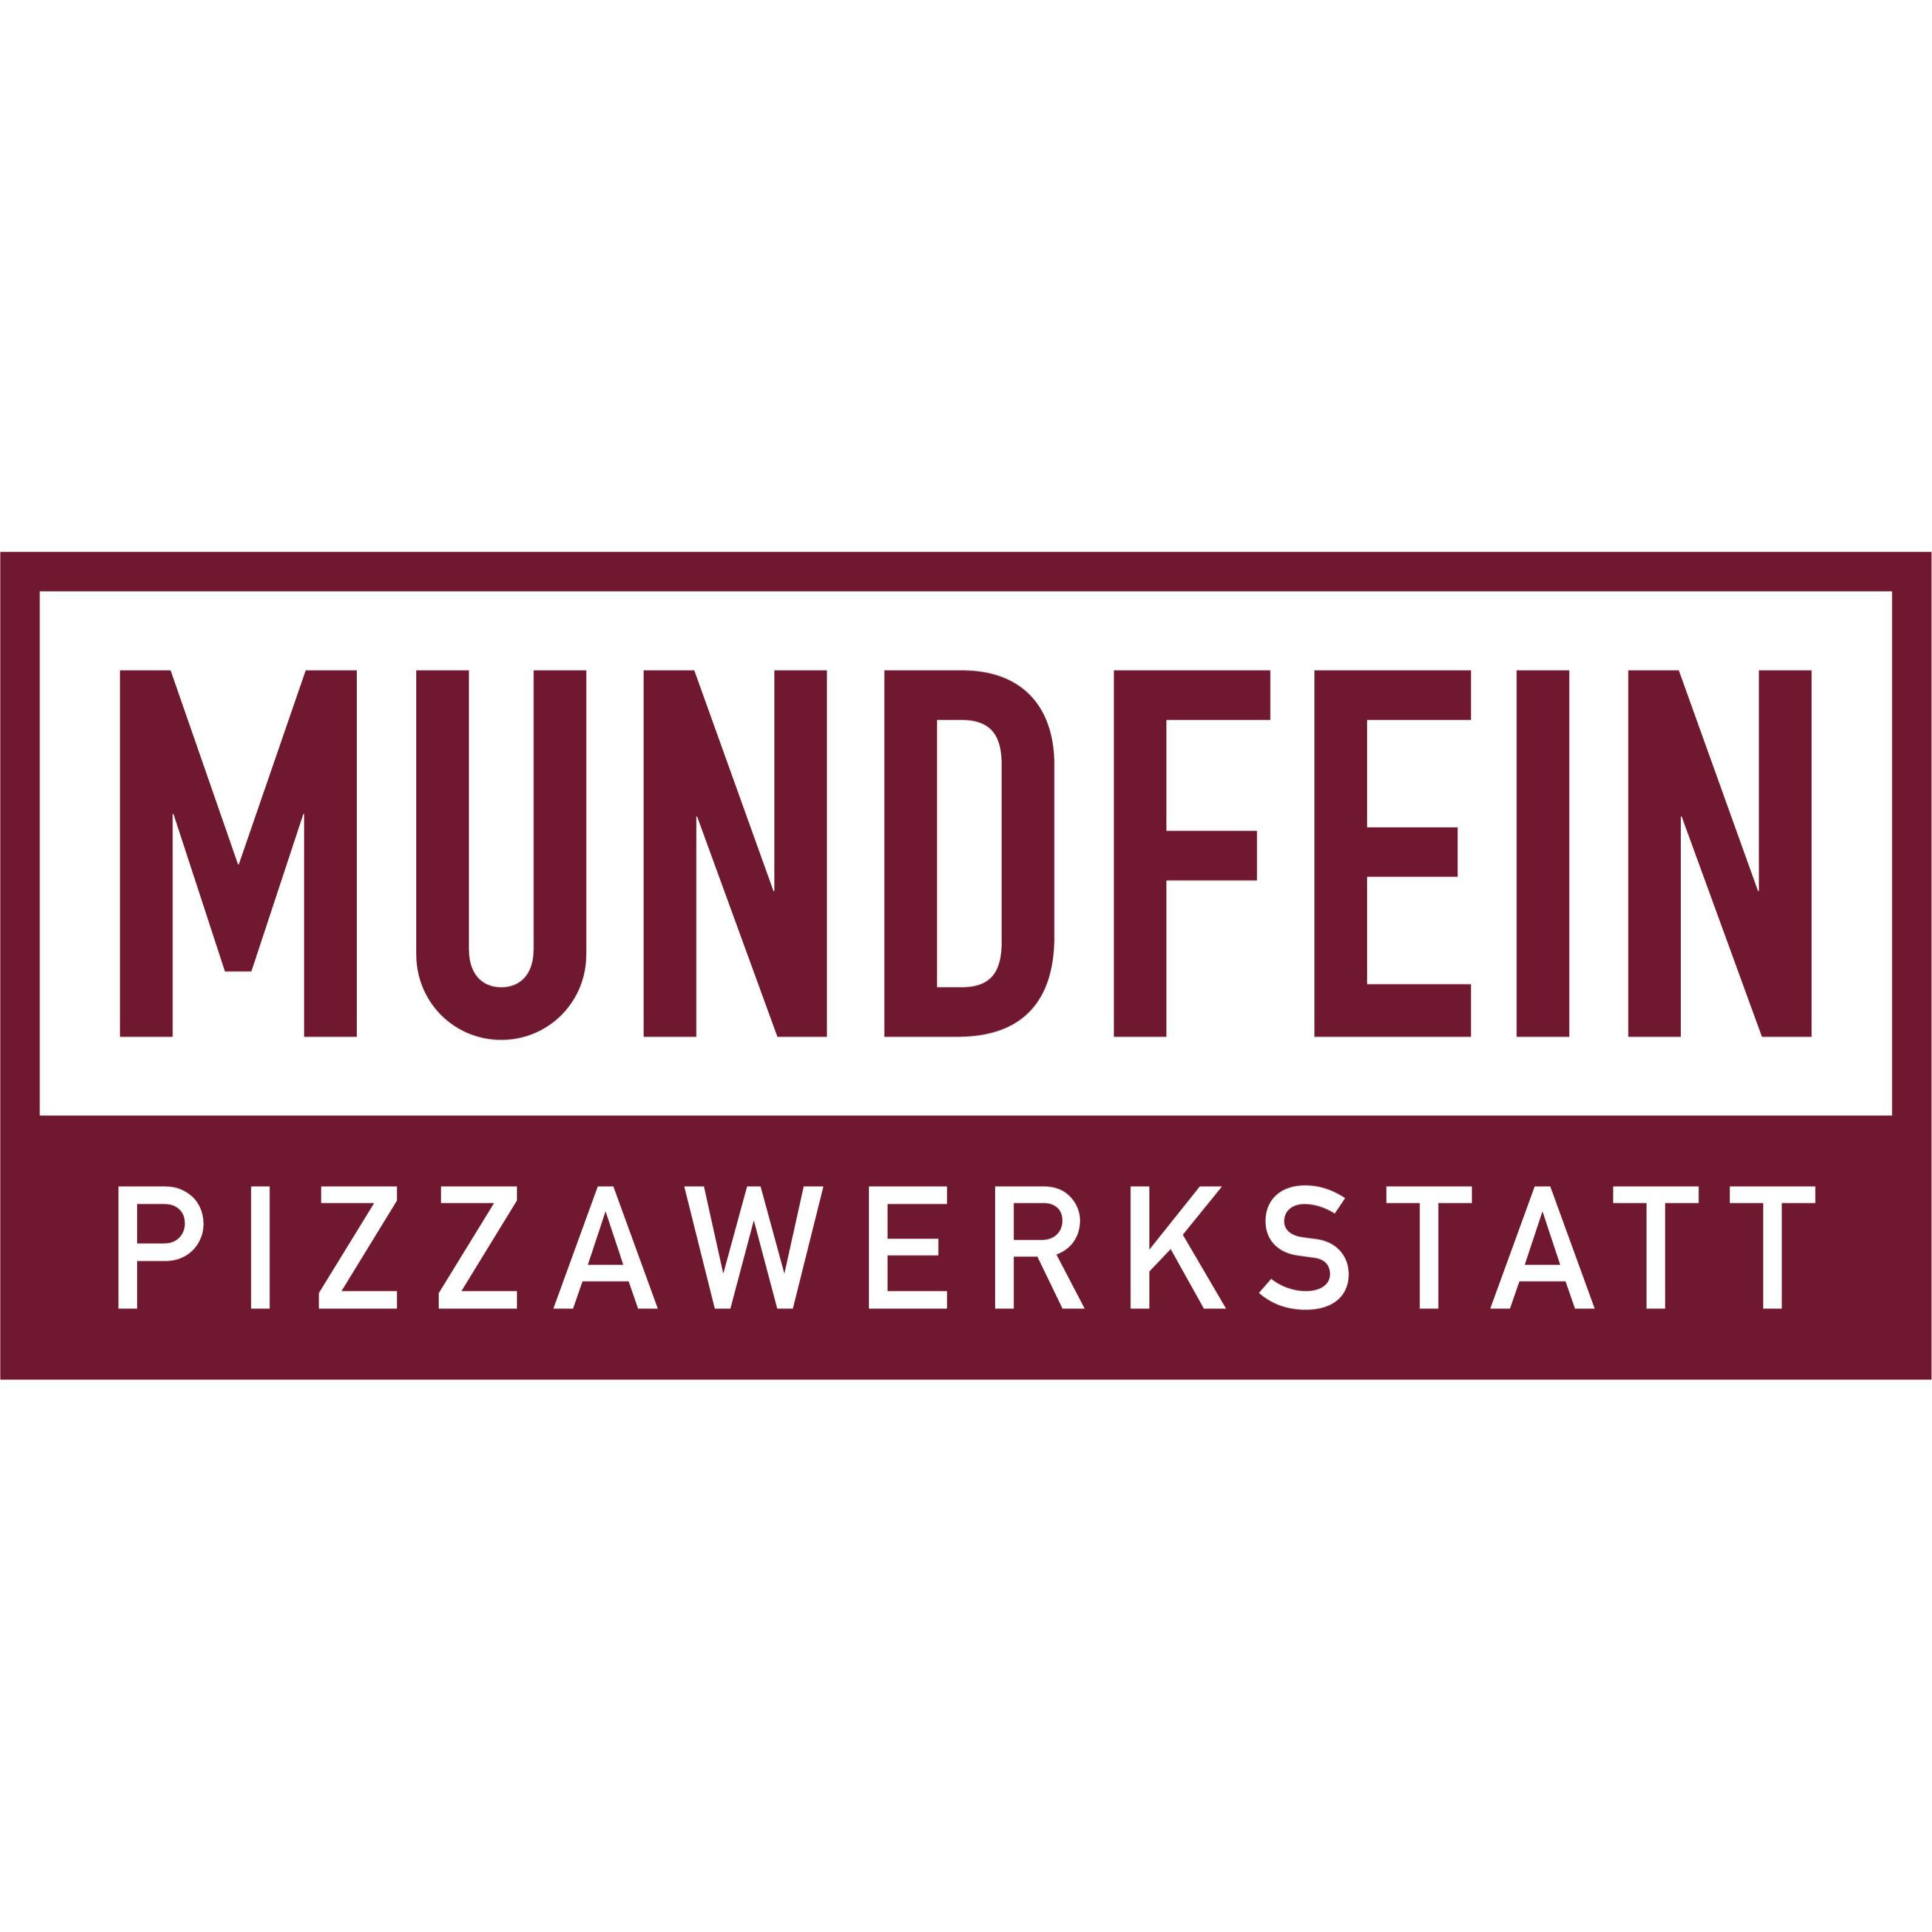 MUNDFEIN Pizzawerkstatt Ahrensburg Logo